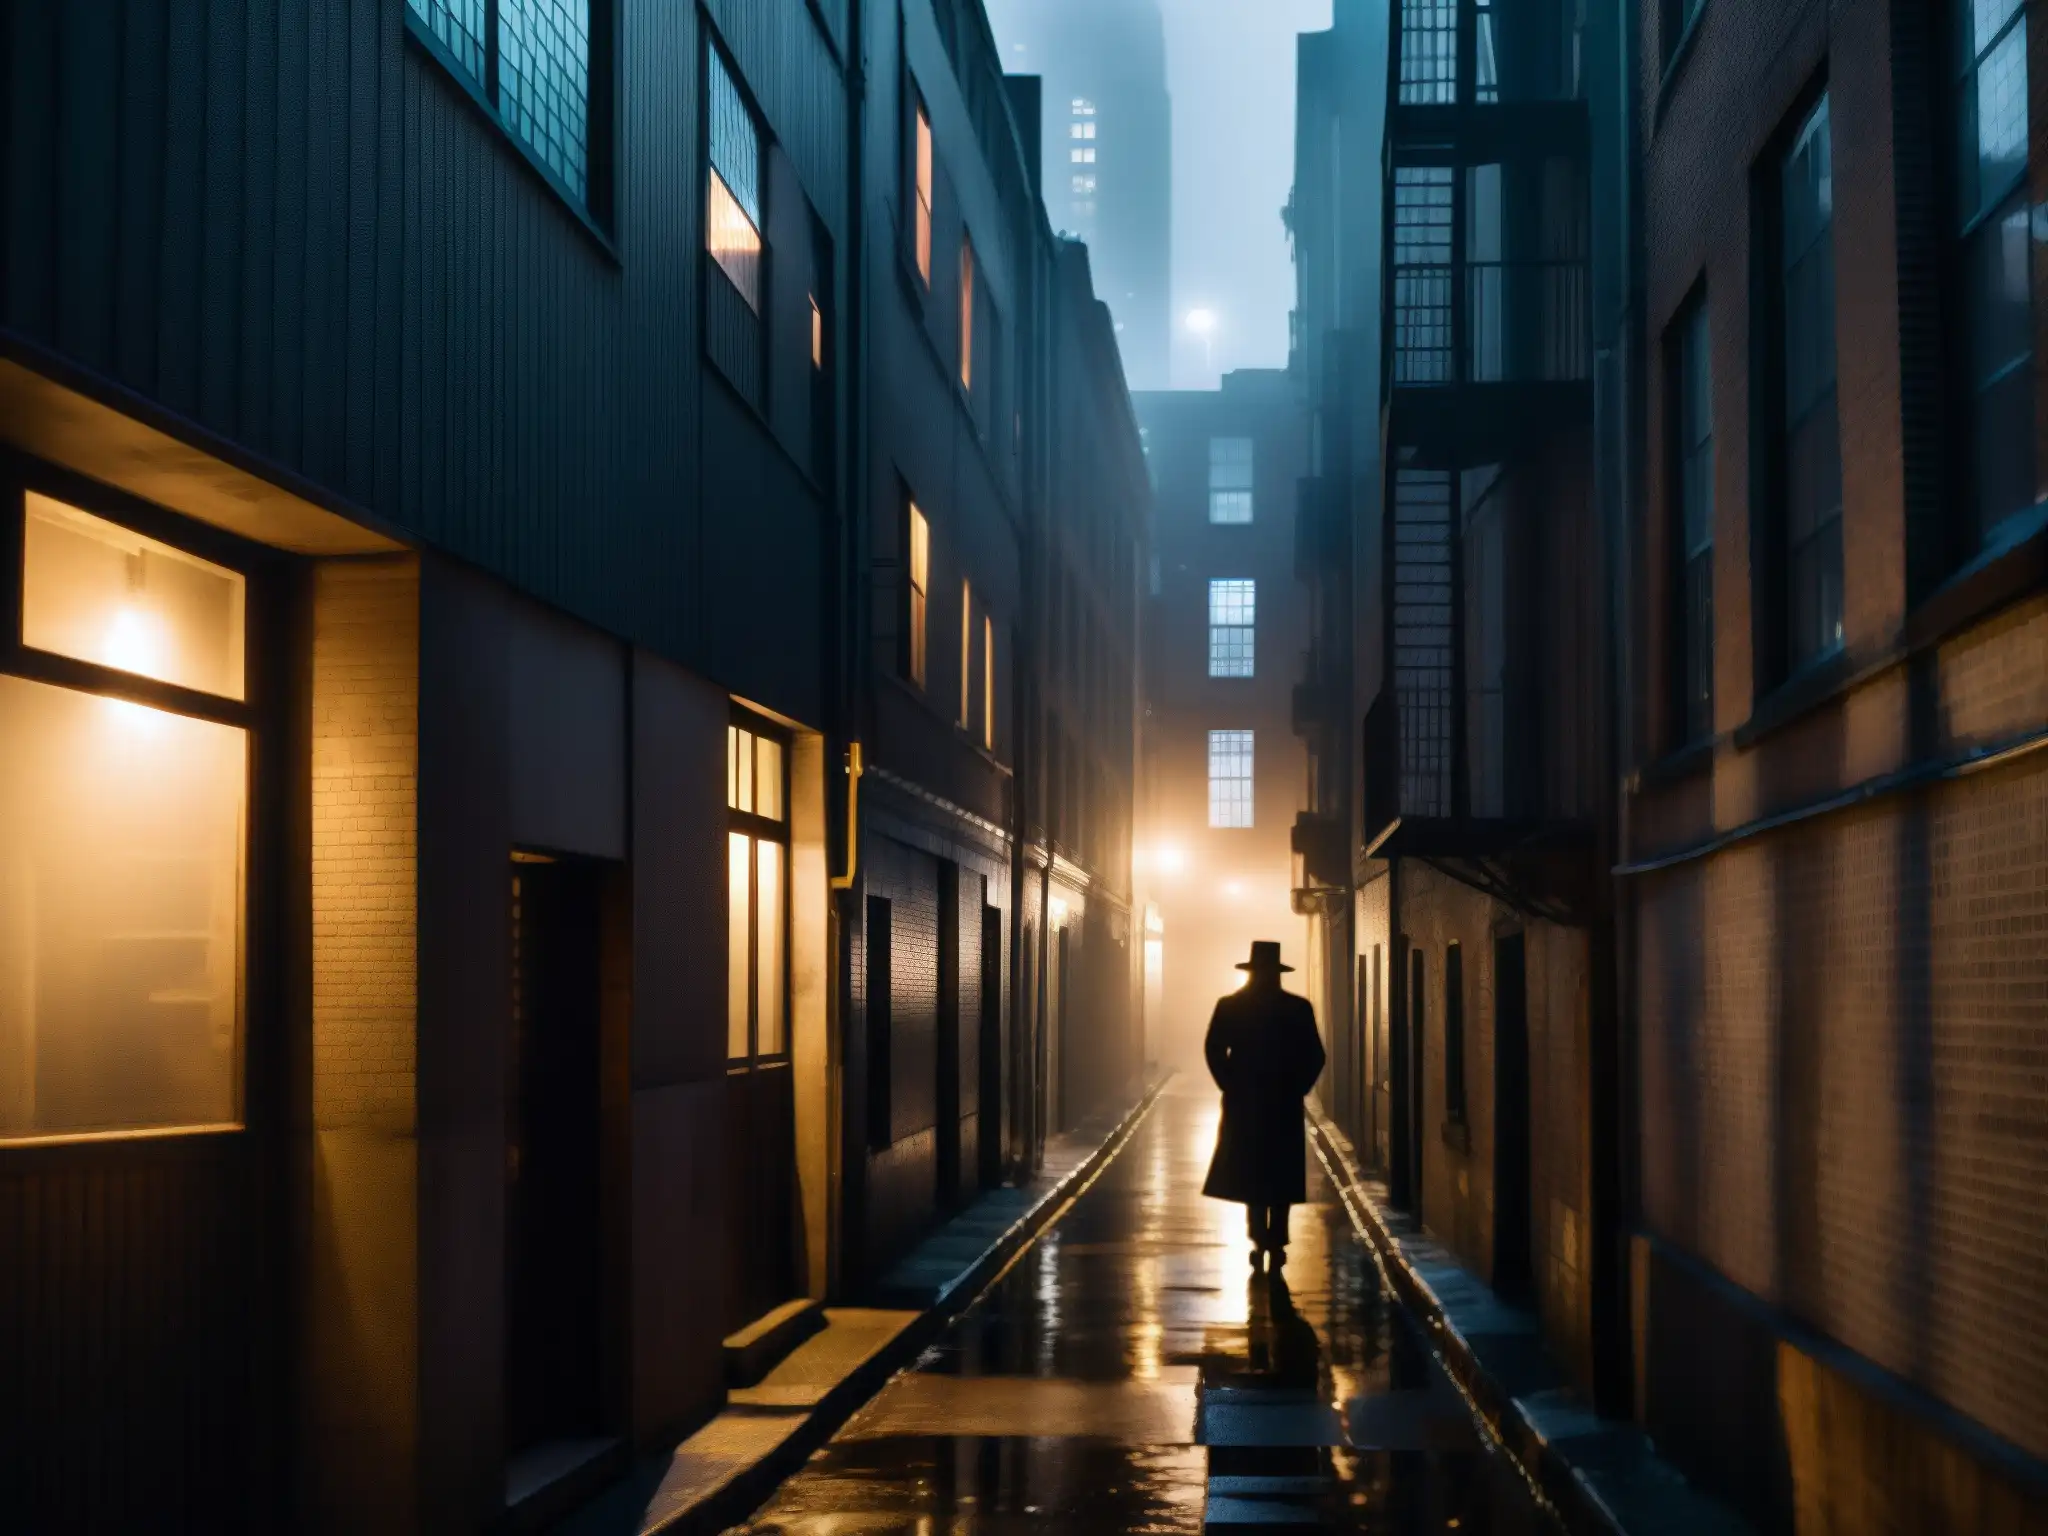 Alleyway urbano misterioso de noche con figura solitaria